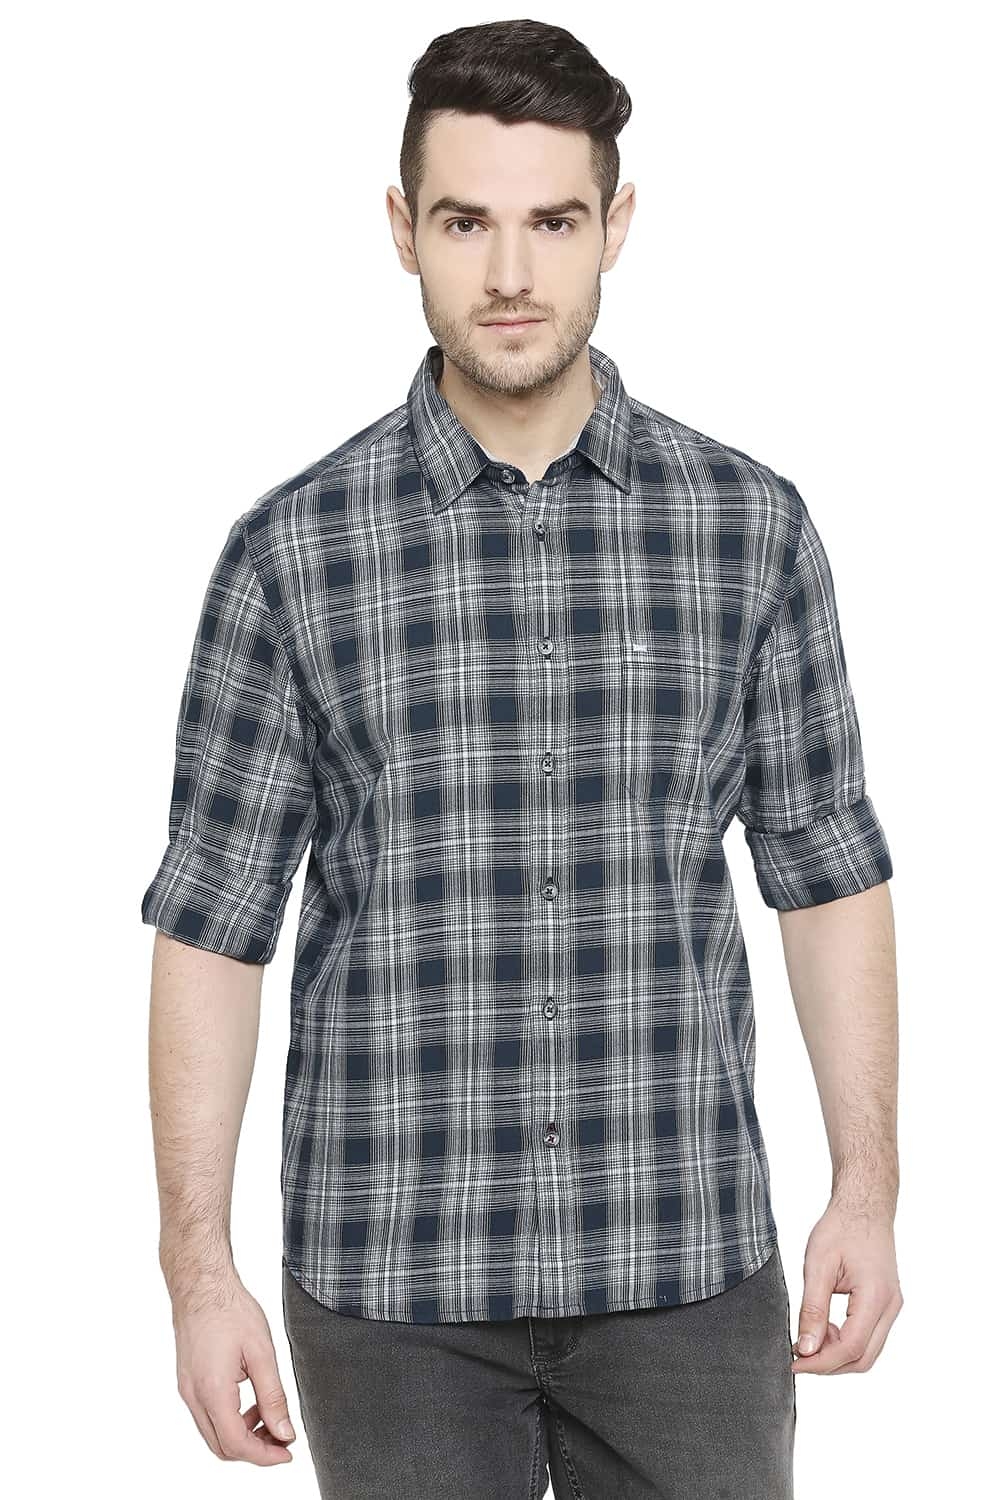 Basics | Basics Slim Fit Balsam Grey Checks Shirt